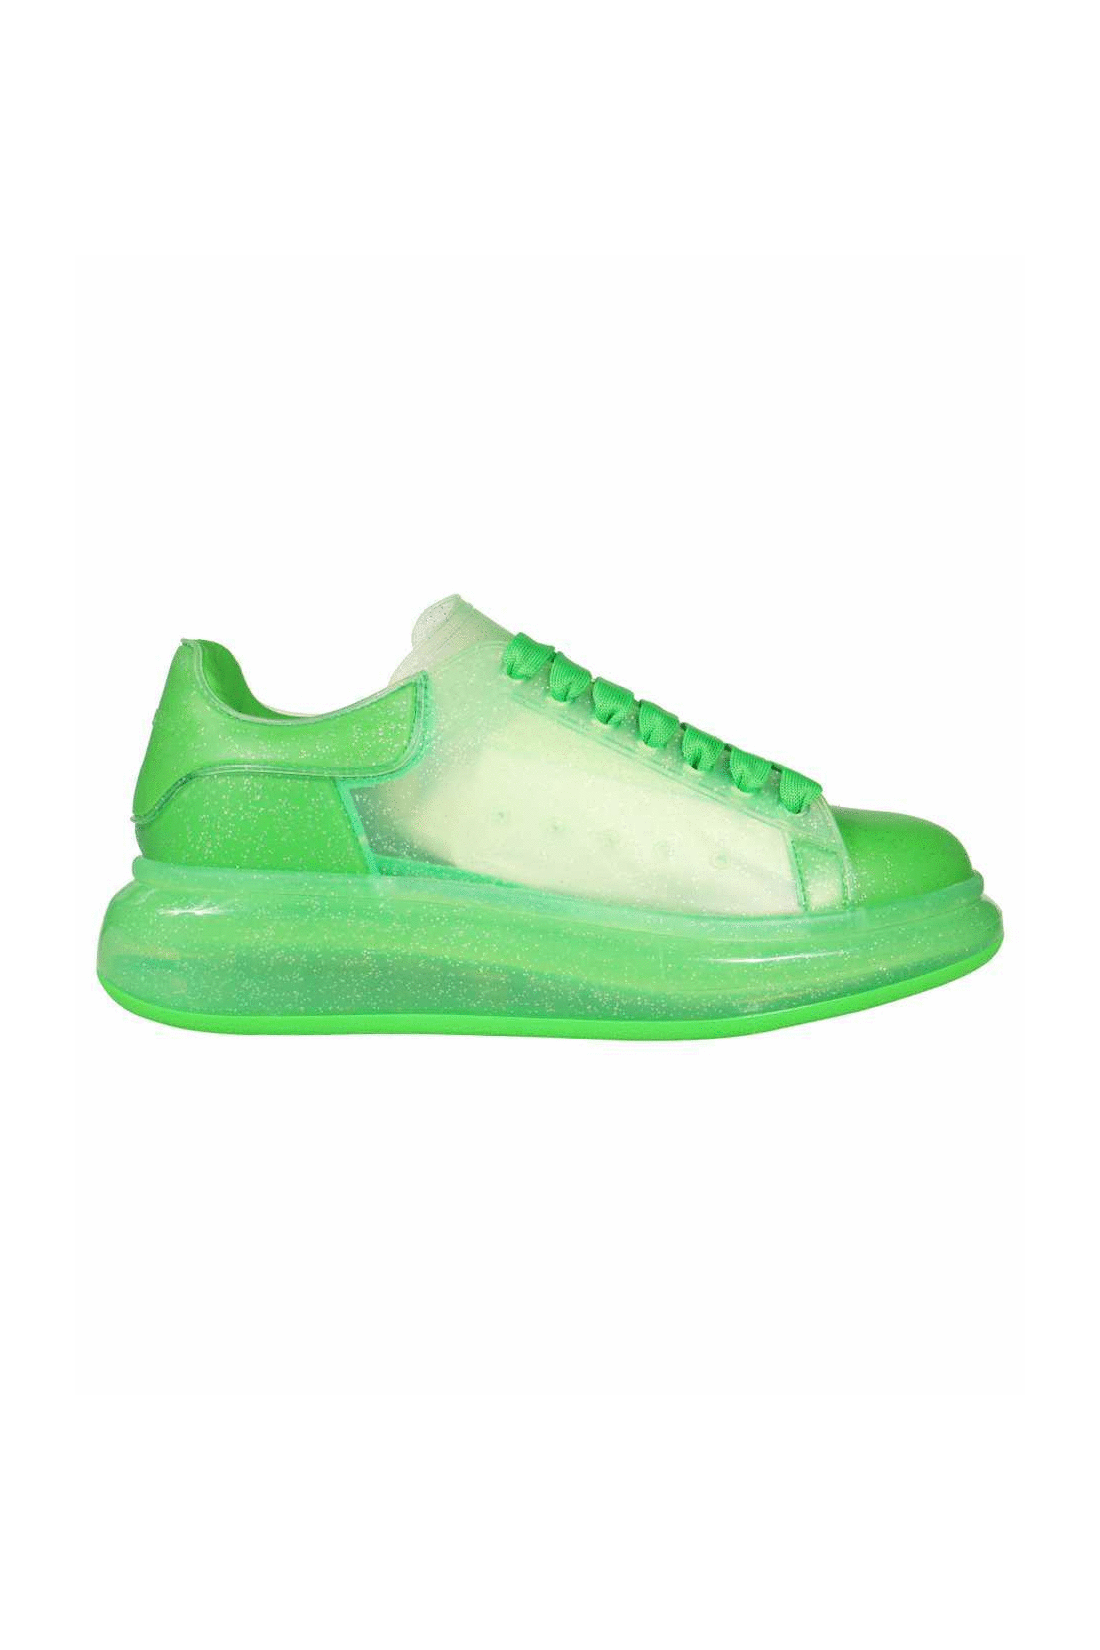 Larry glittery rubber sneakers